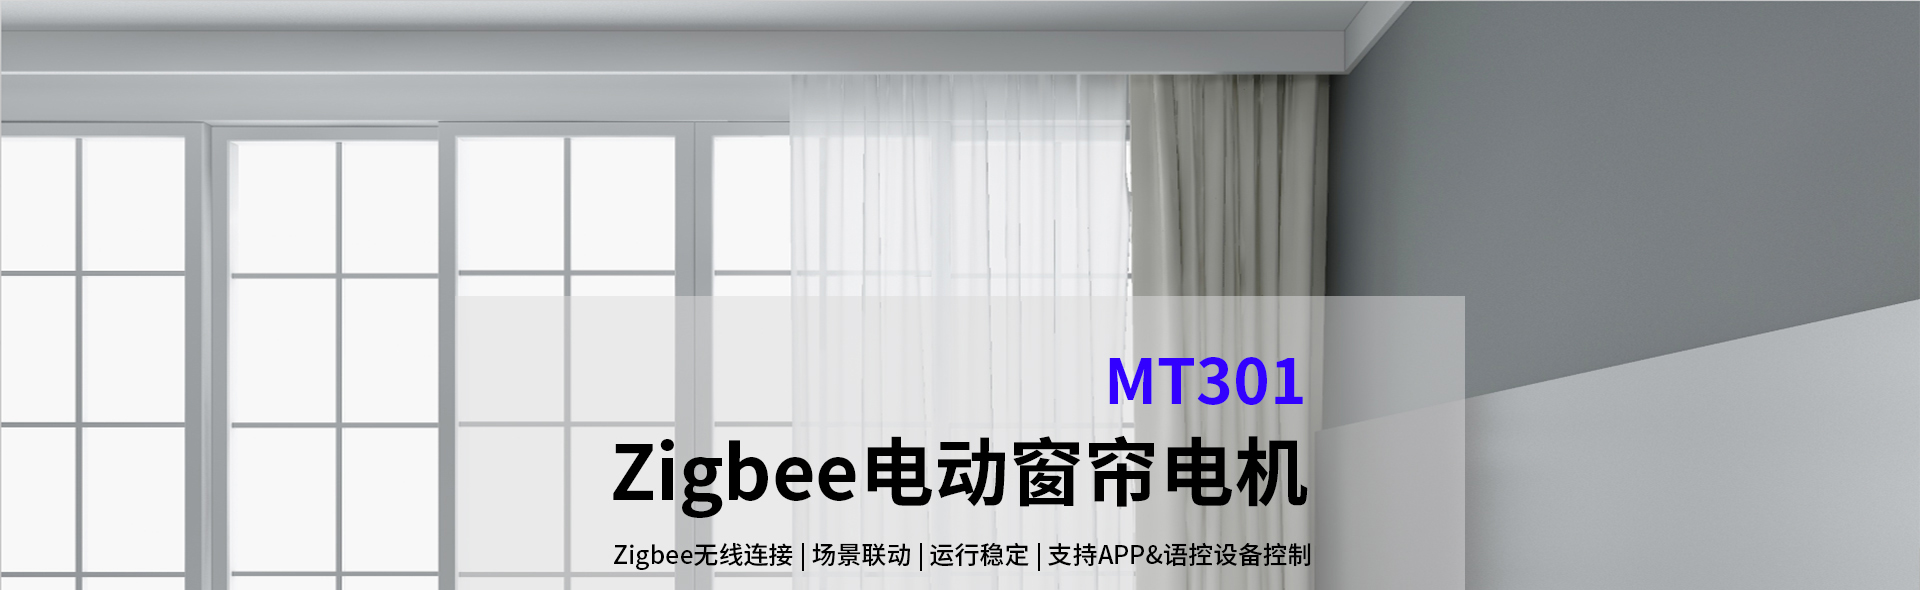 Zigbee电动窗帘电机-MT301